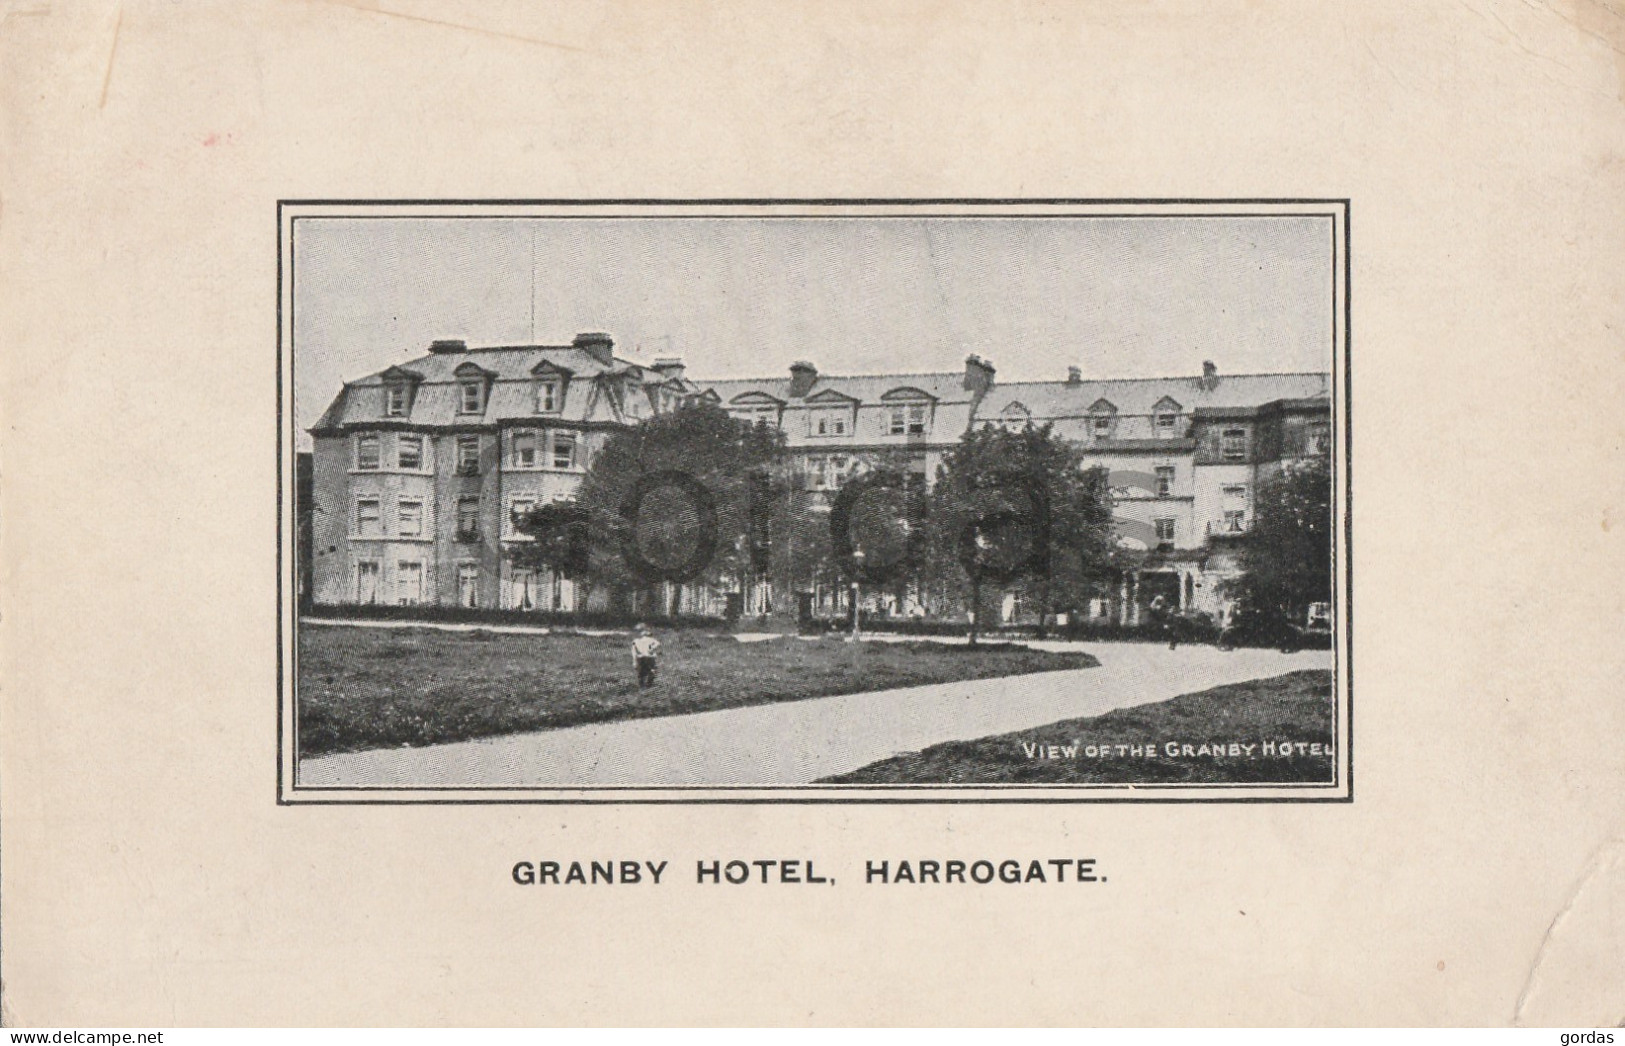 UK - Harrogate - Granby Hotel - Harrogate